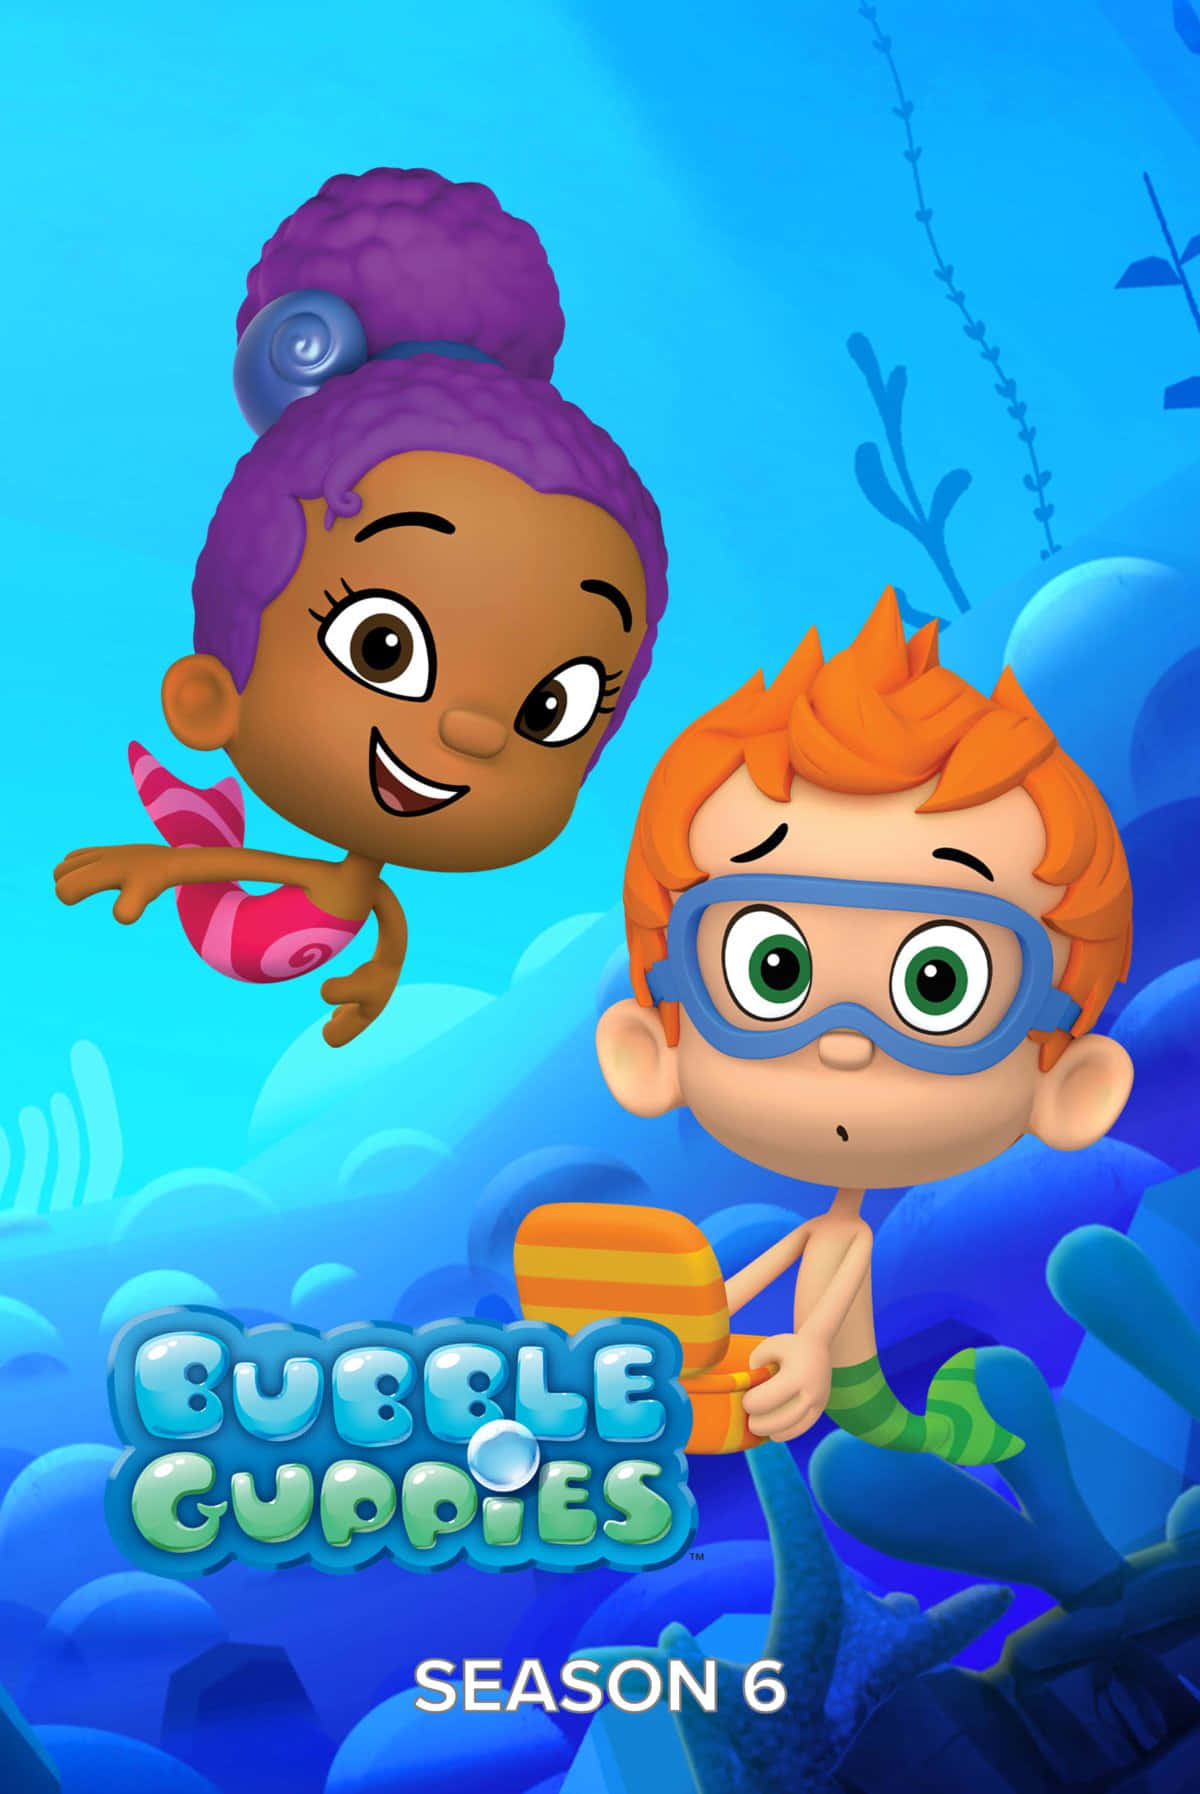 Komog Udforsk En Magisk Undervandsverden Med Molly, Gil Og Alle Deres Bubble Guppy Venner!